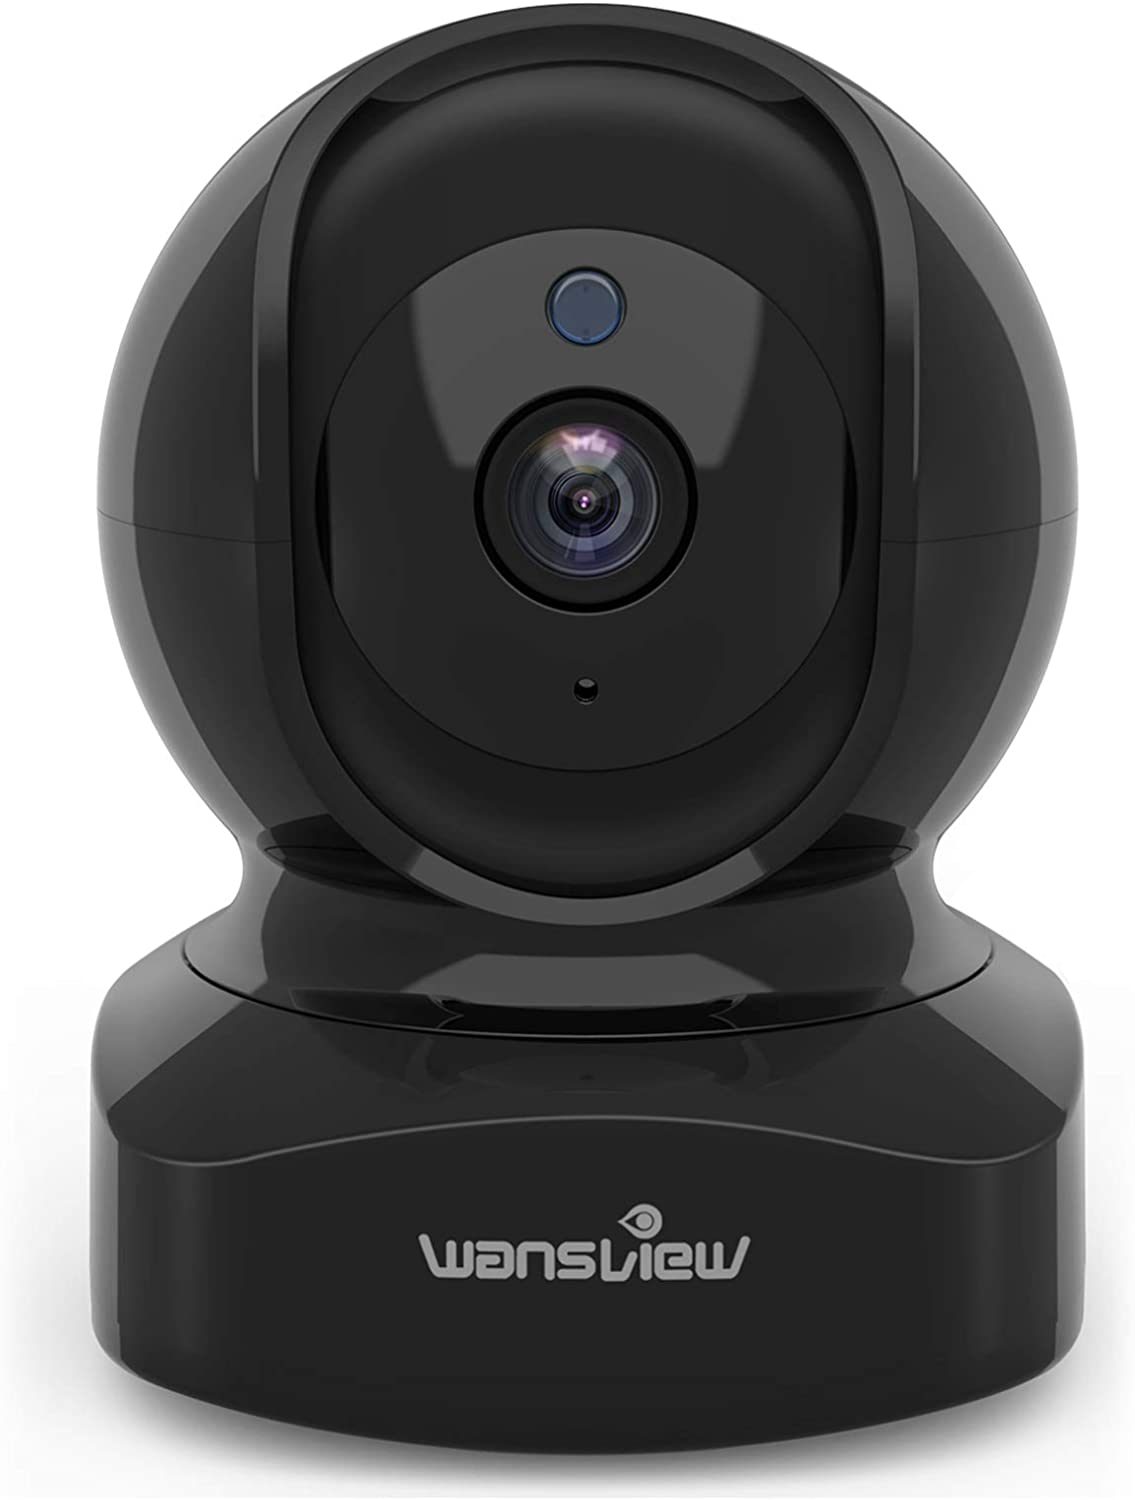 10. Wansview draadloze beveiligingscamera